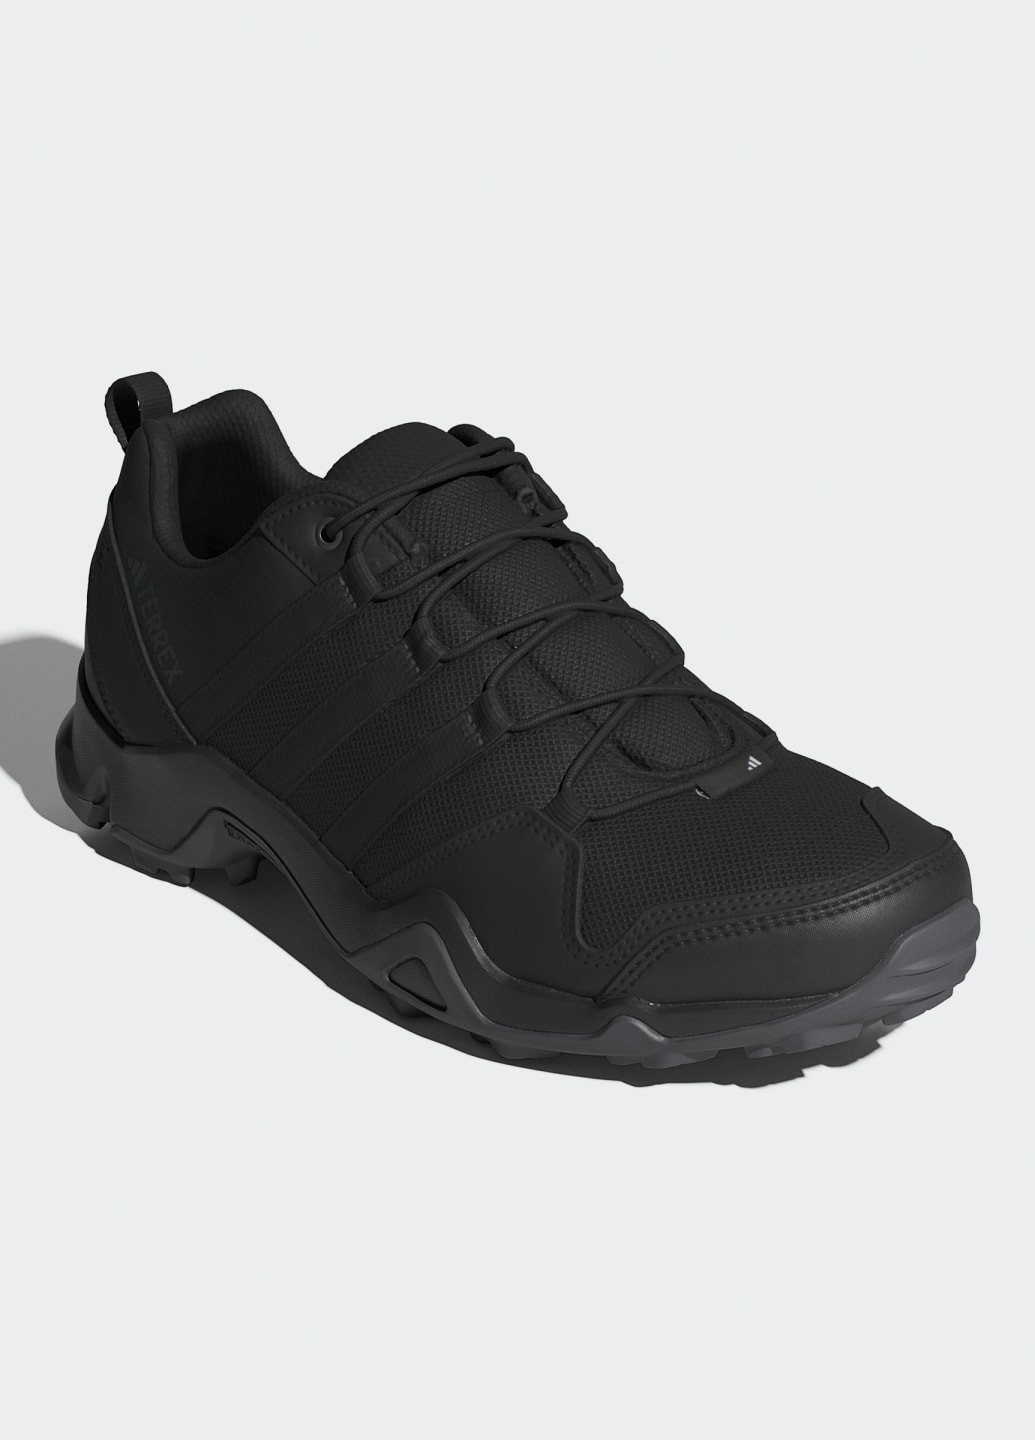 Чорні всесезон кросівки для хайкінгу ax2s adidas